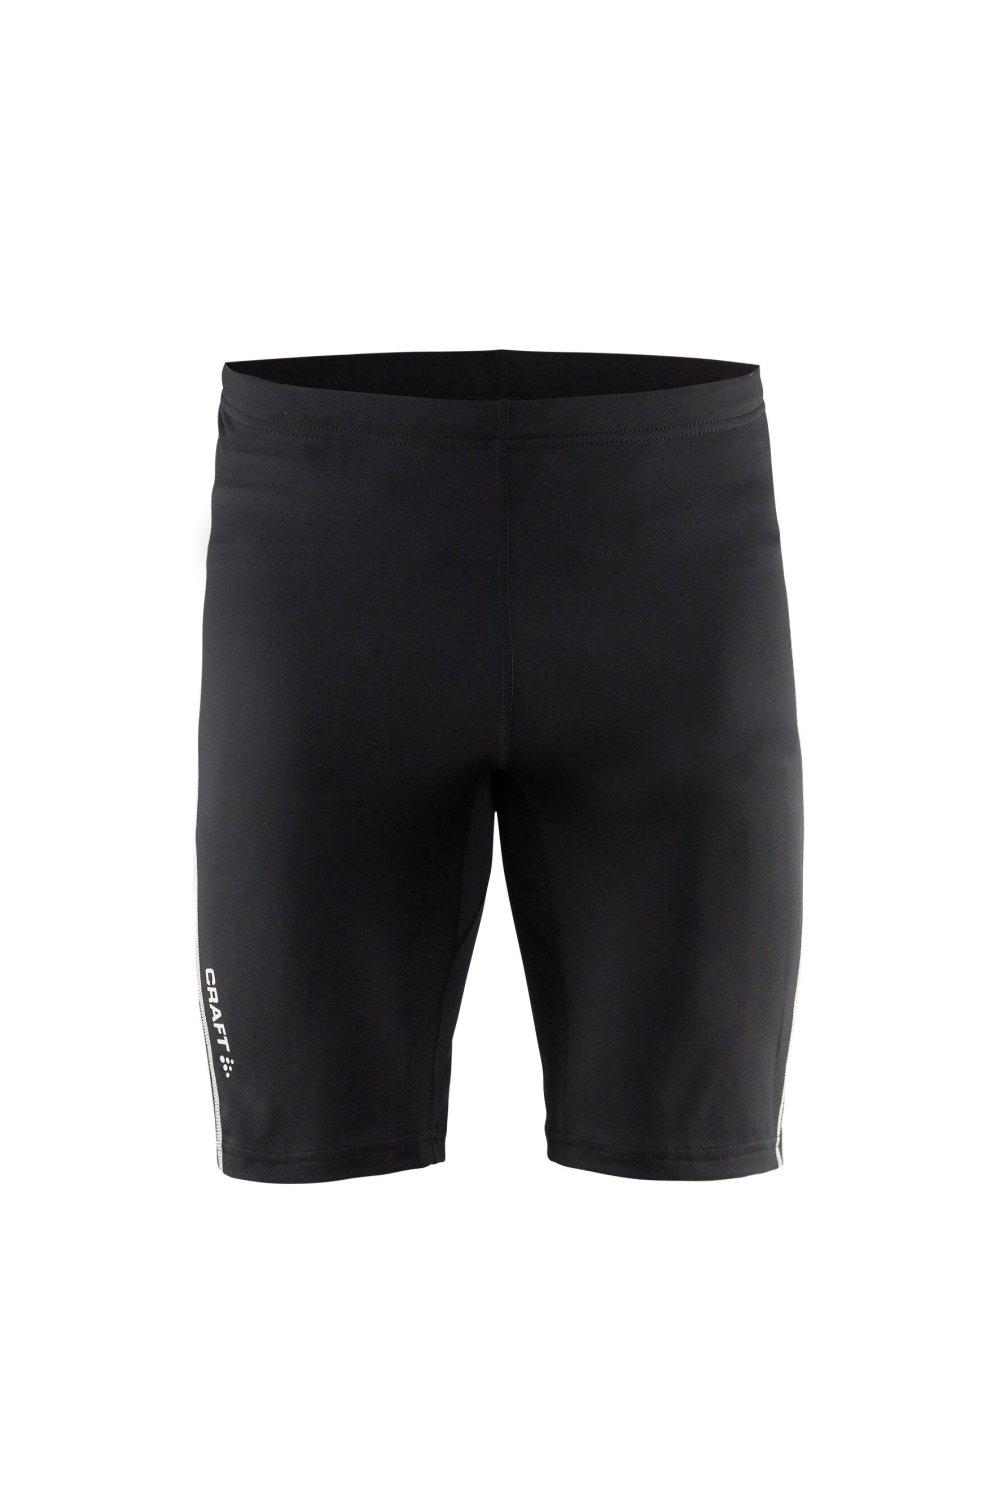 шорты для фитнеса reebok размер xl черный Разум короткие колготки CRAFT, черный